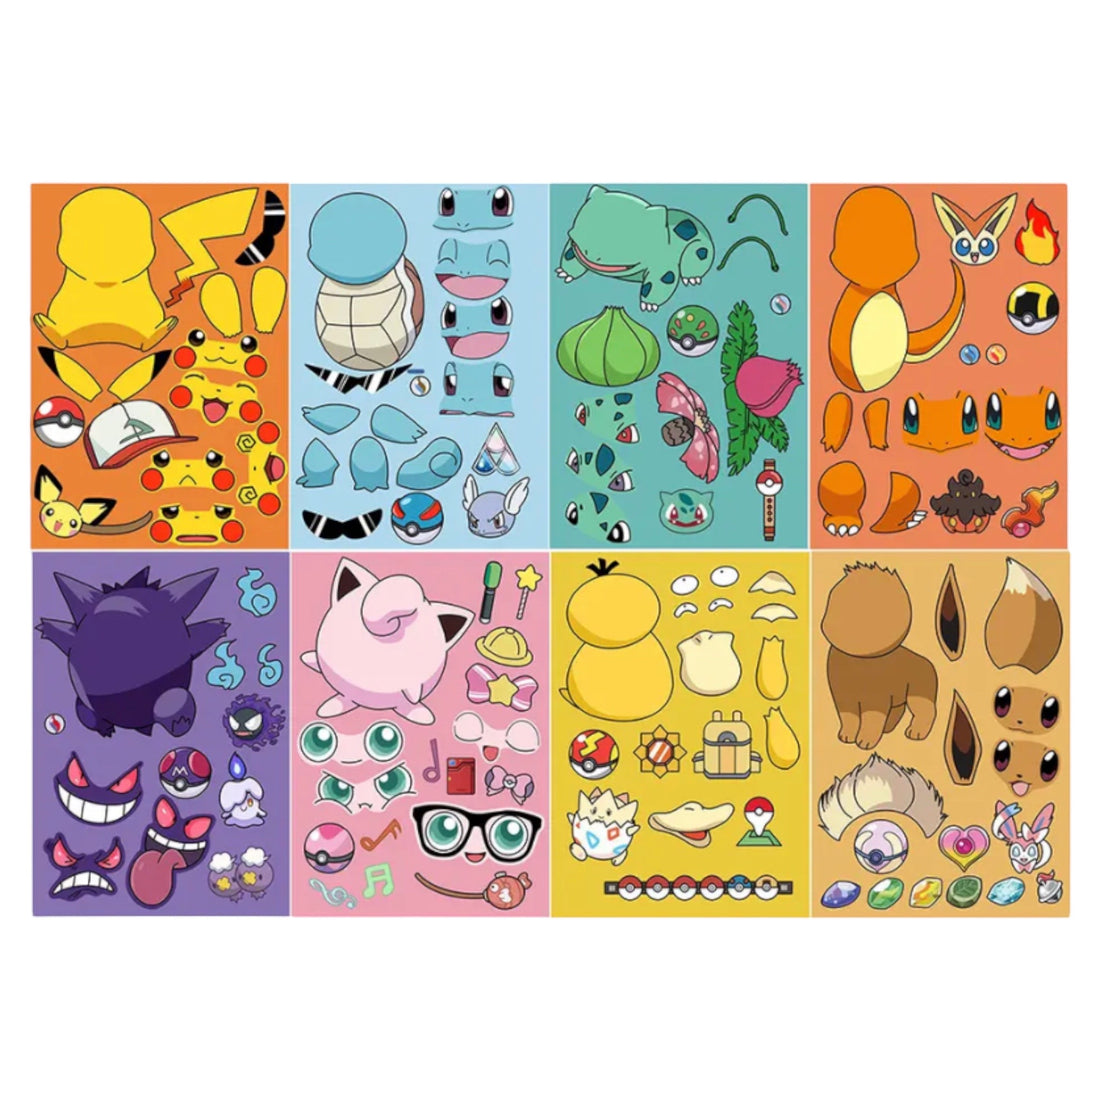 Láminas de Stickers - Arma tu Pokemon – Barquito de Papel